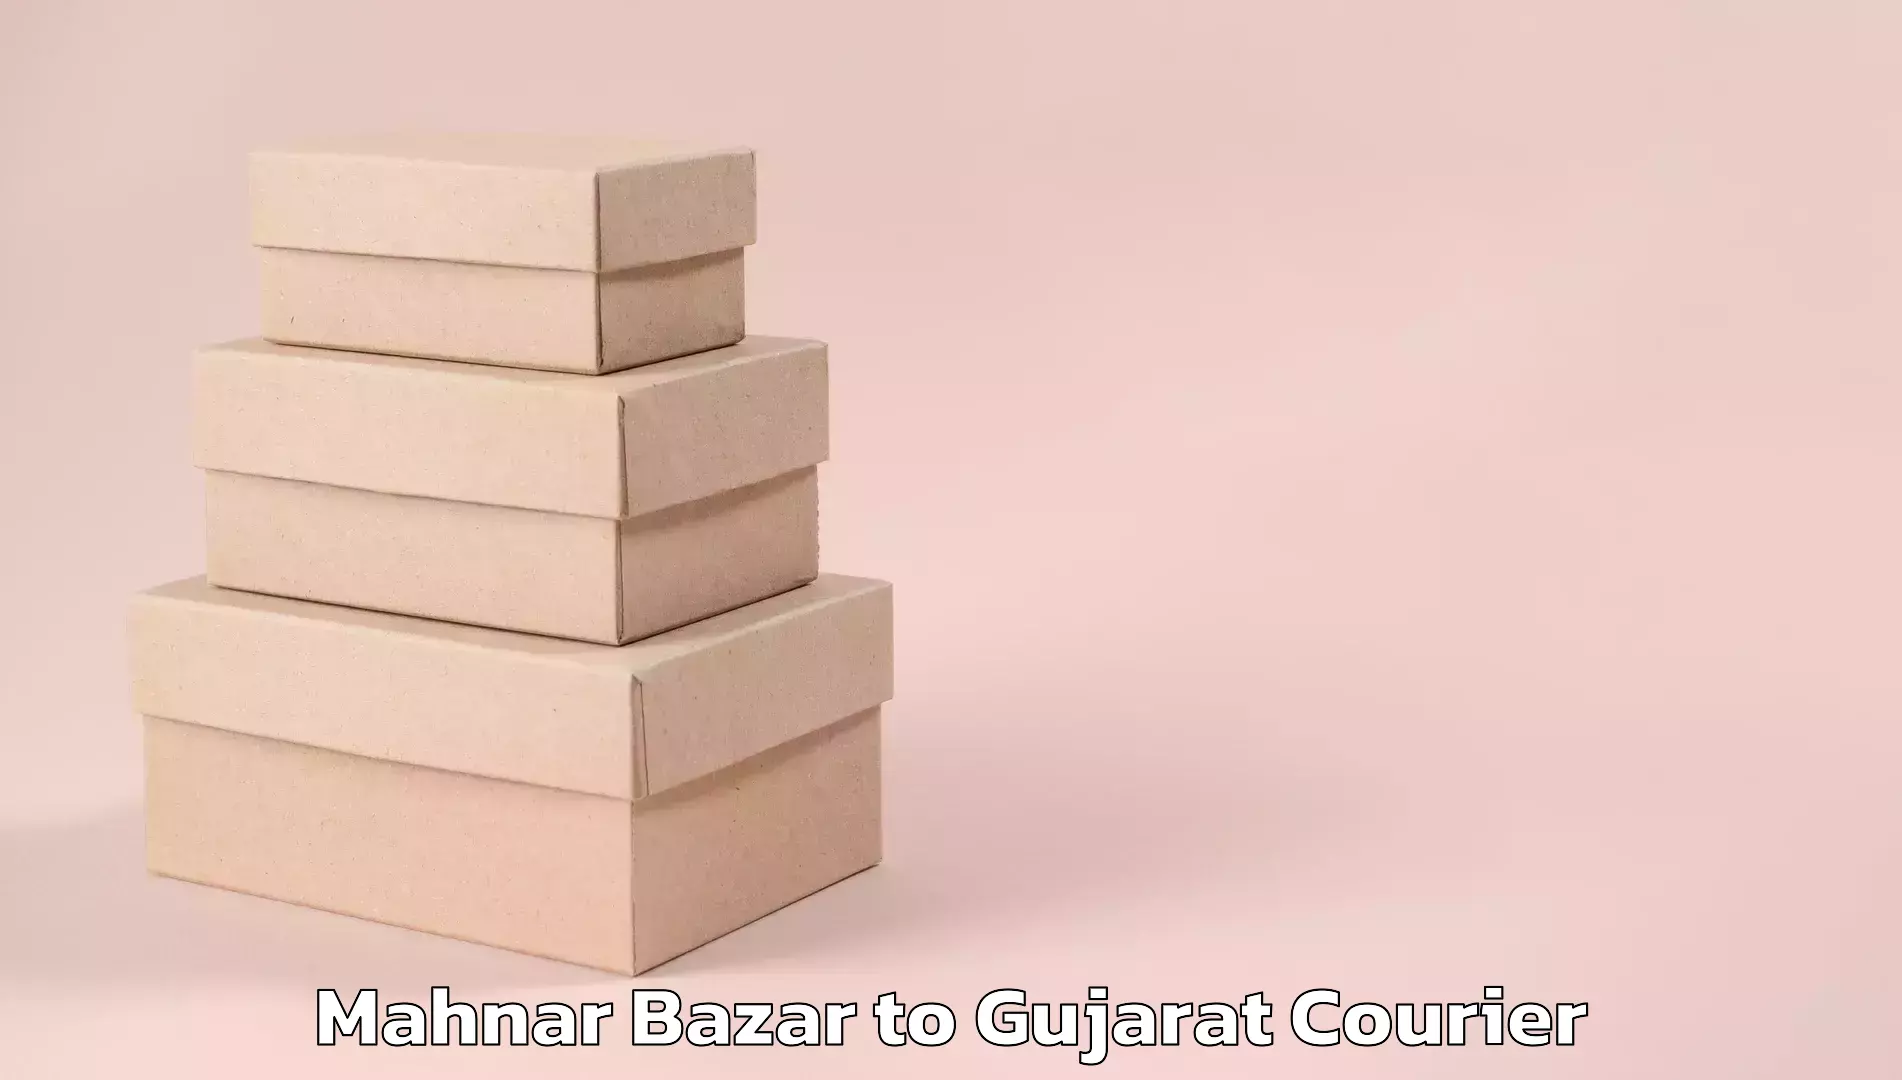 Efficient parcel service Mahnar Bazar to Gujarat